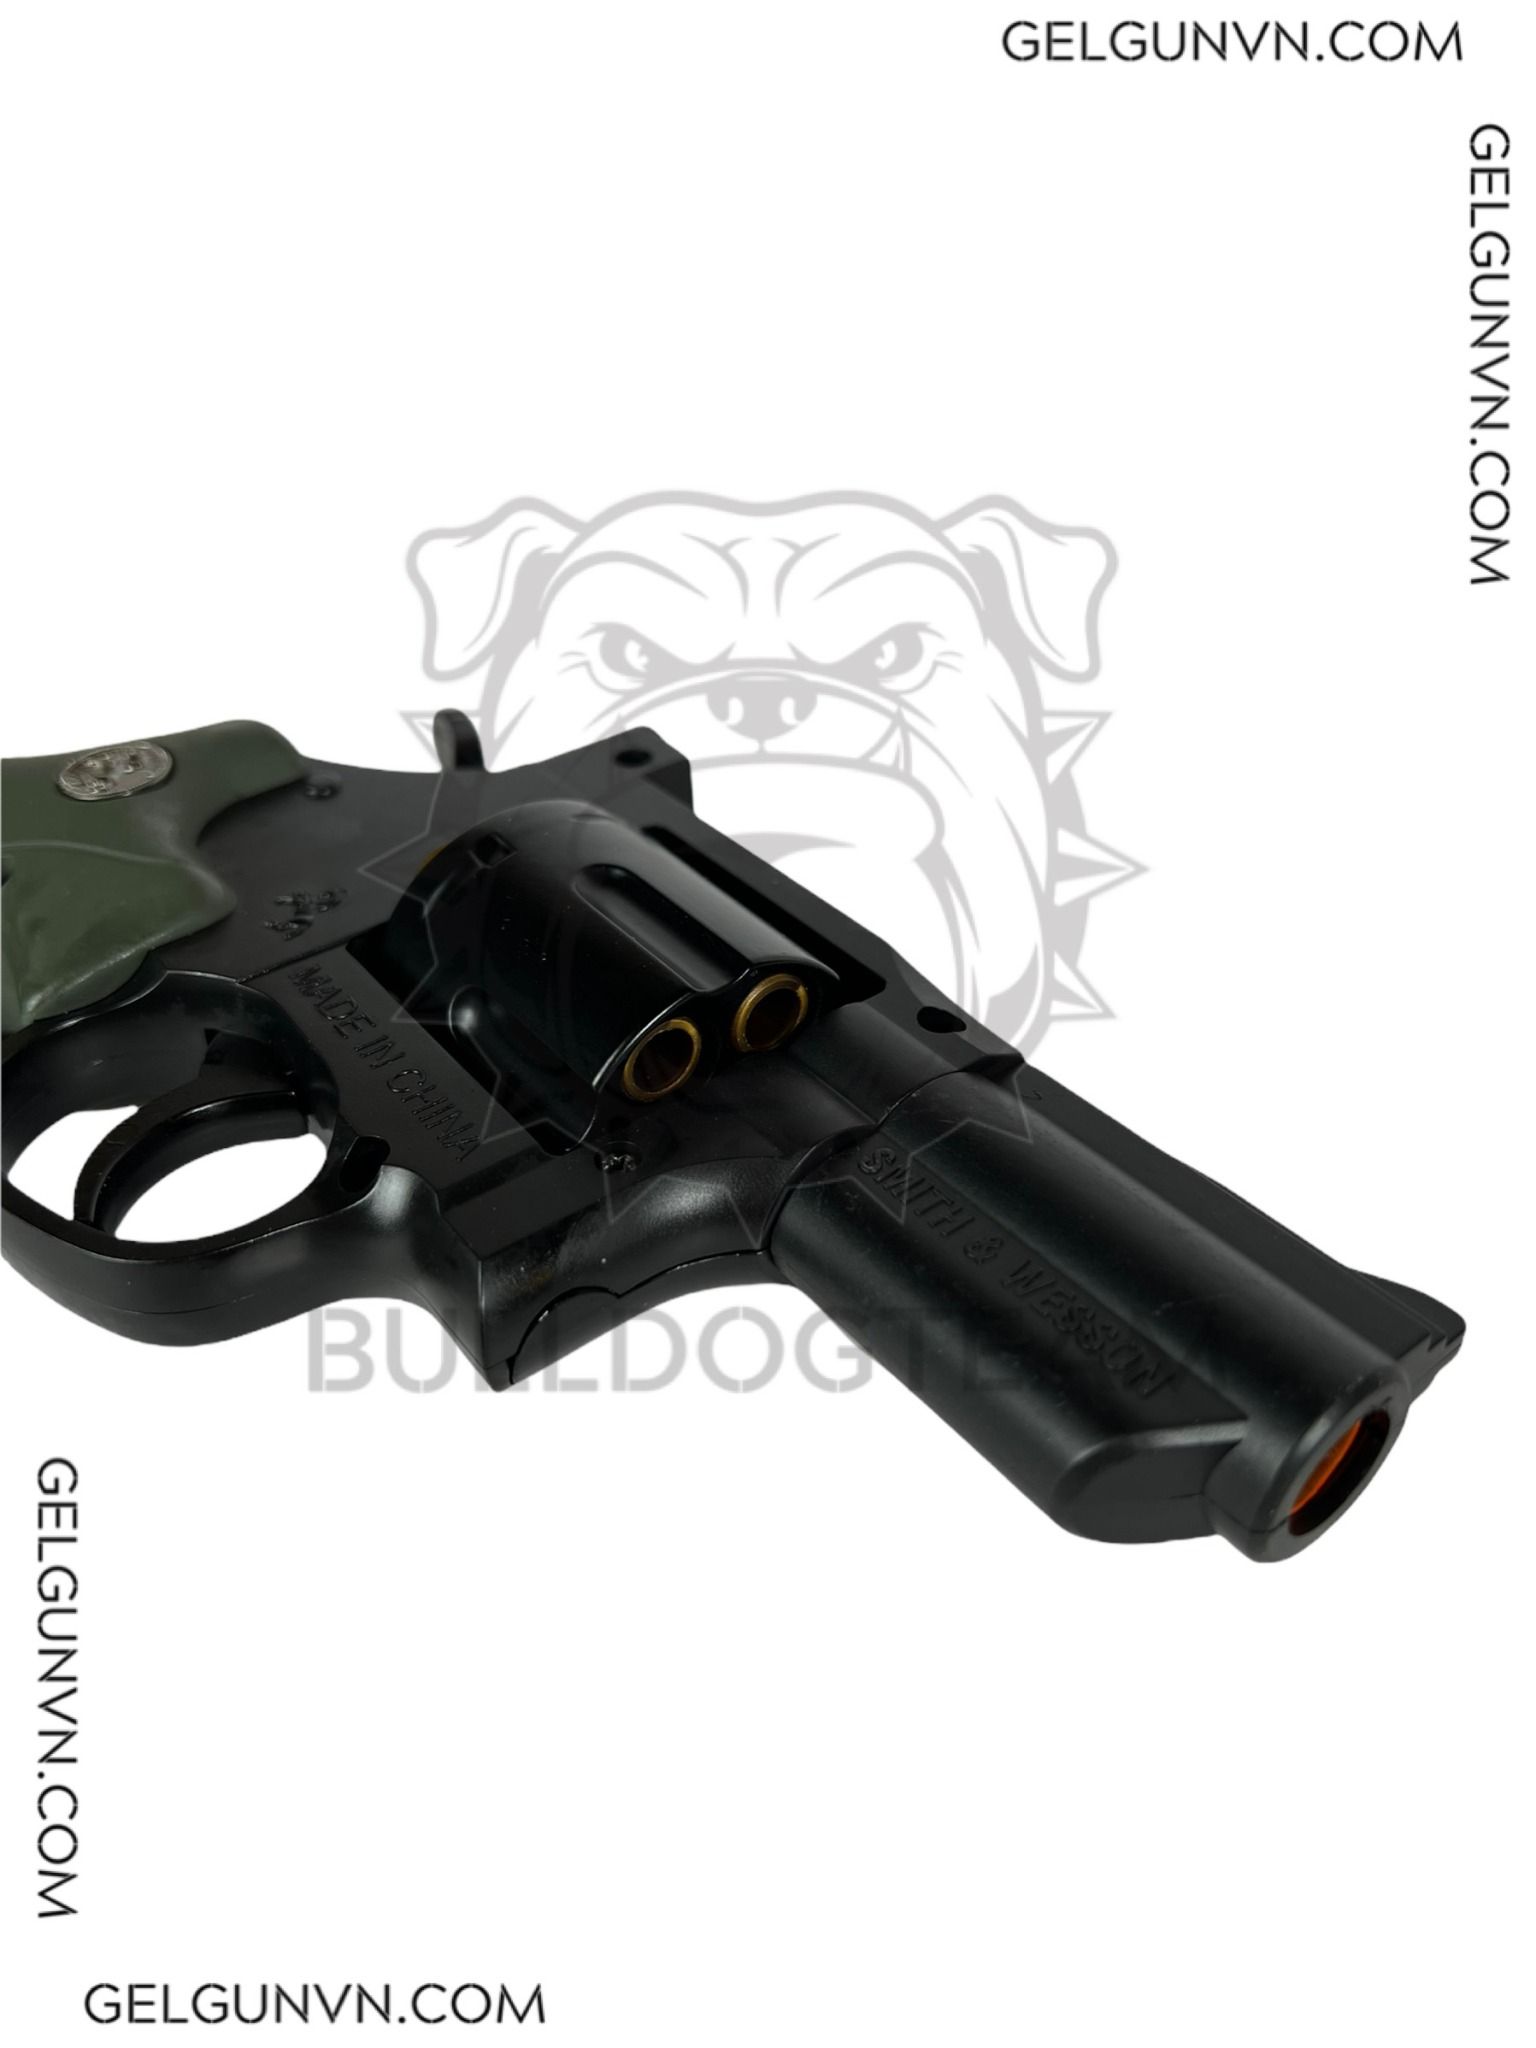 Súng Lục Auto Colt Dan Wesson Revolver Đạn Xốp Chất Lượng  Igelgun